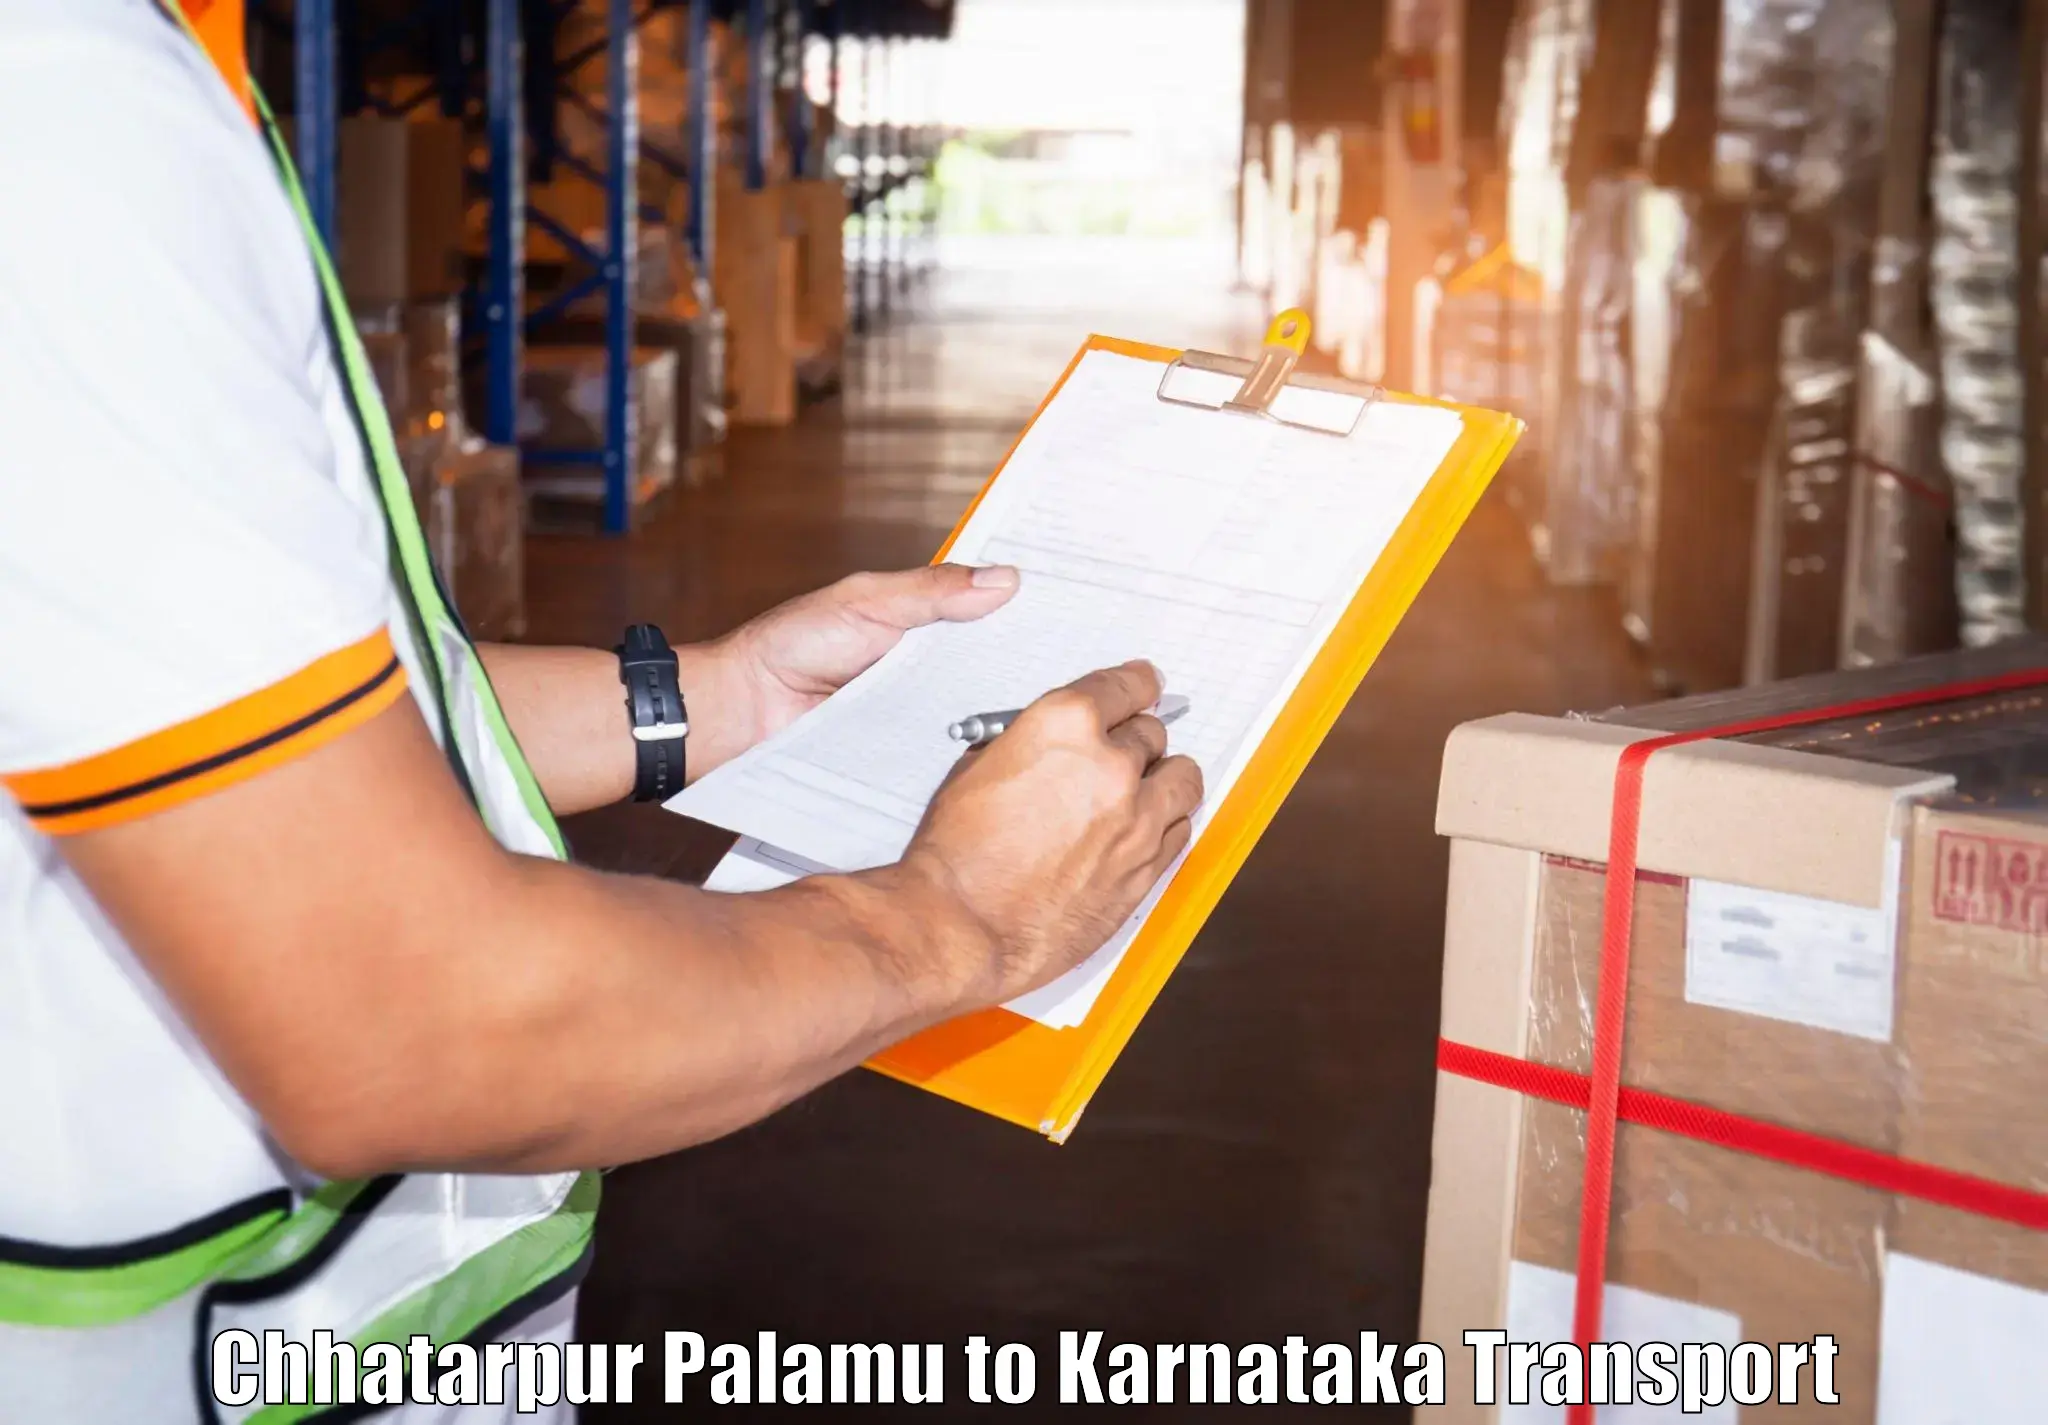 Air cargo transport services Chhatarpur Palamu to Karnataka